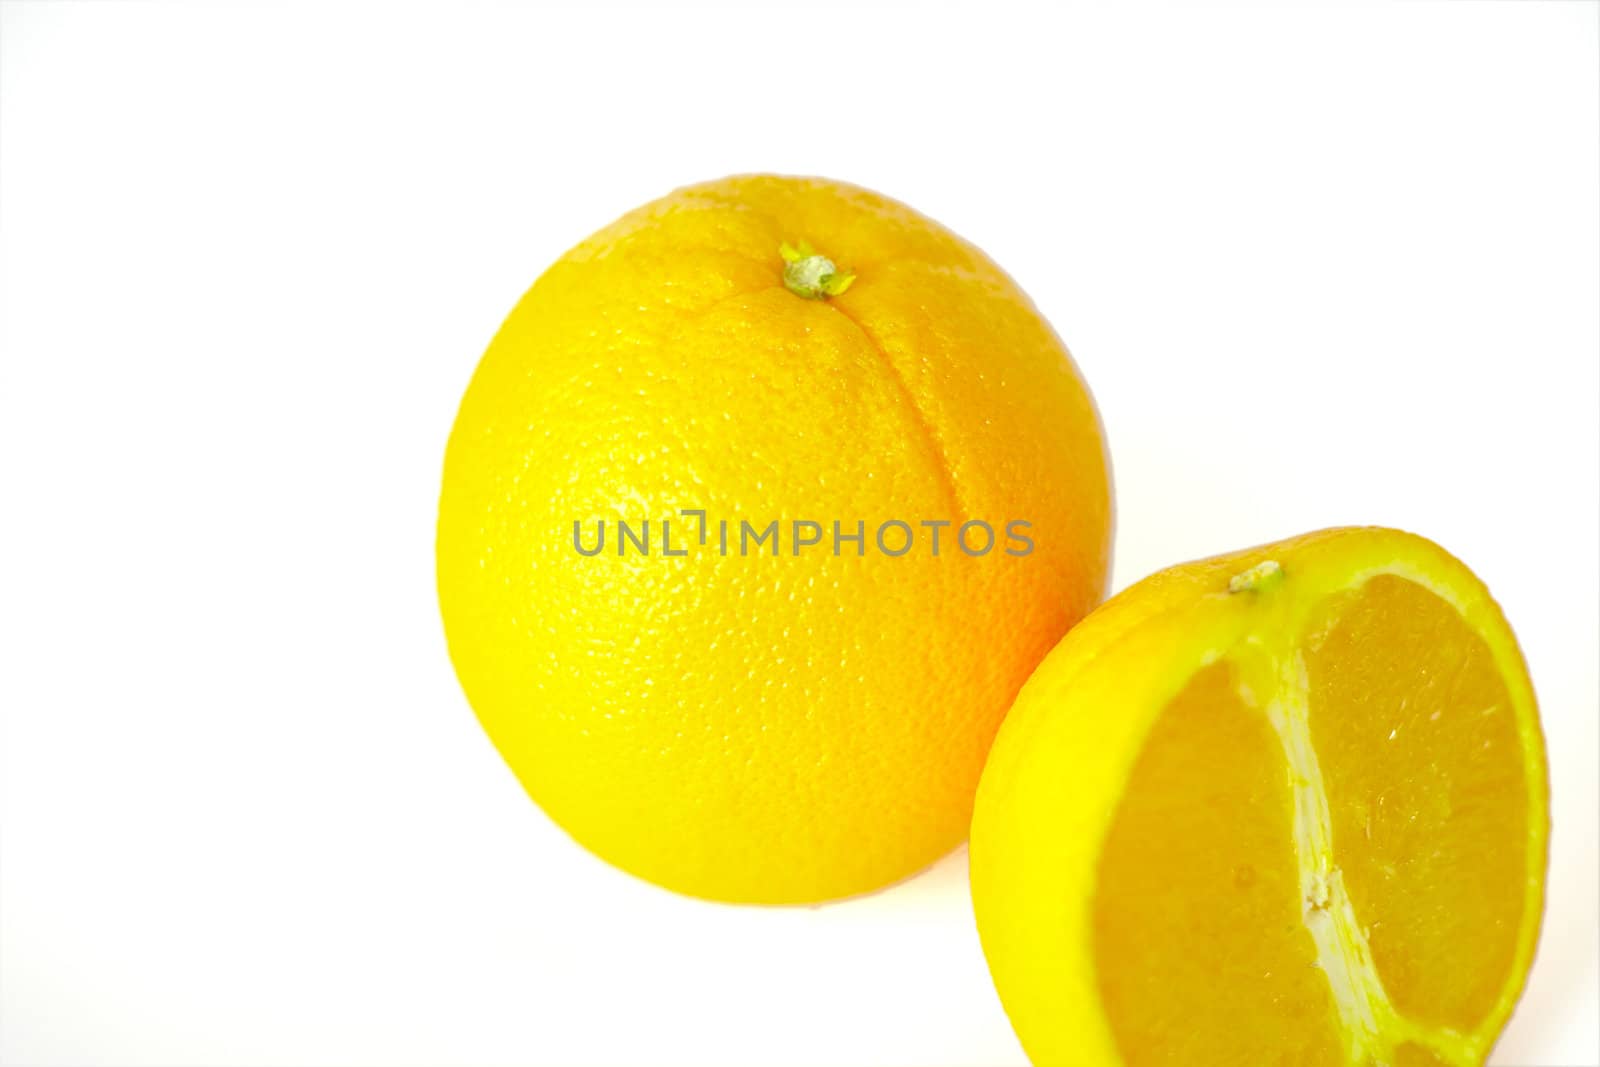 Two oranges by mattvanderlinde